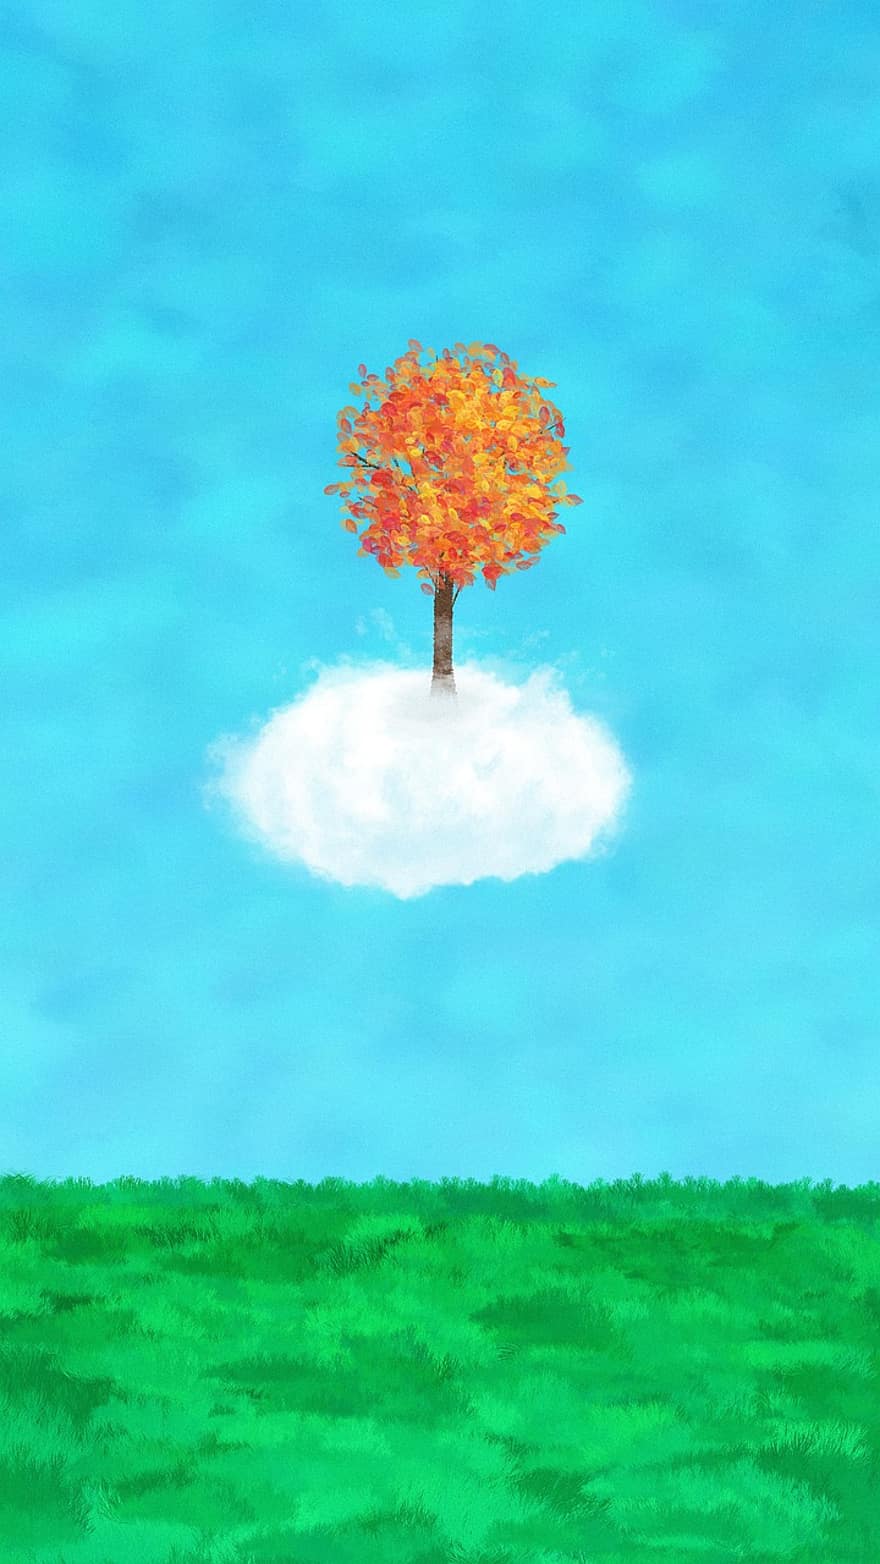 målning, kreativitet, landskap, moln, gräsmark, träd